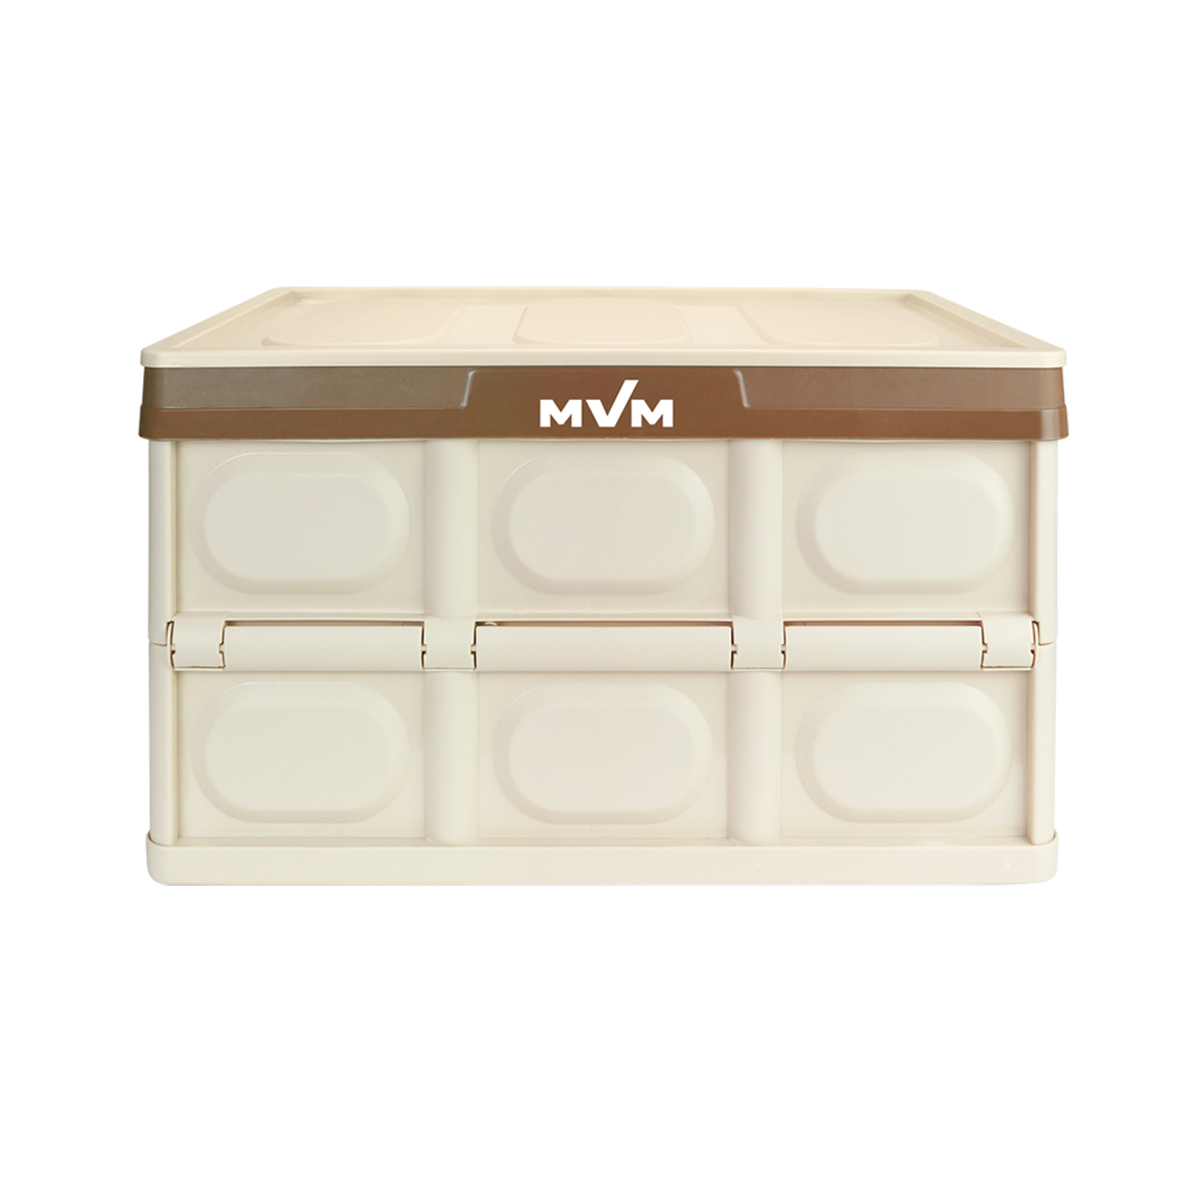 Ящик для хранения с крышкой MVM пластиковый бежевый 230x290x420 FB-1 30L BEIGE